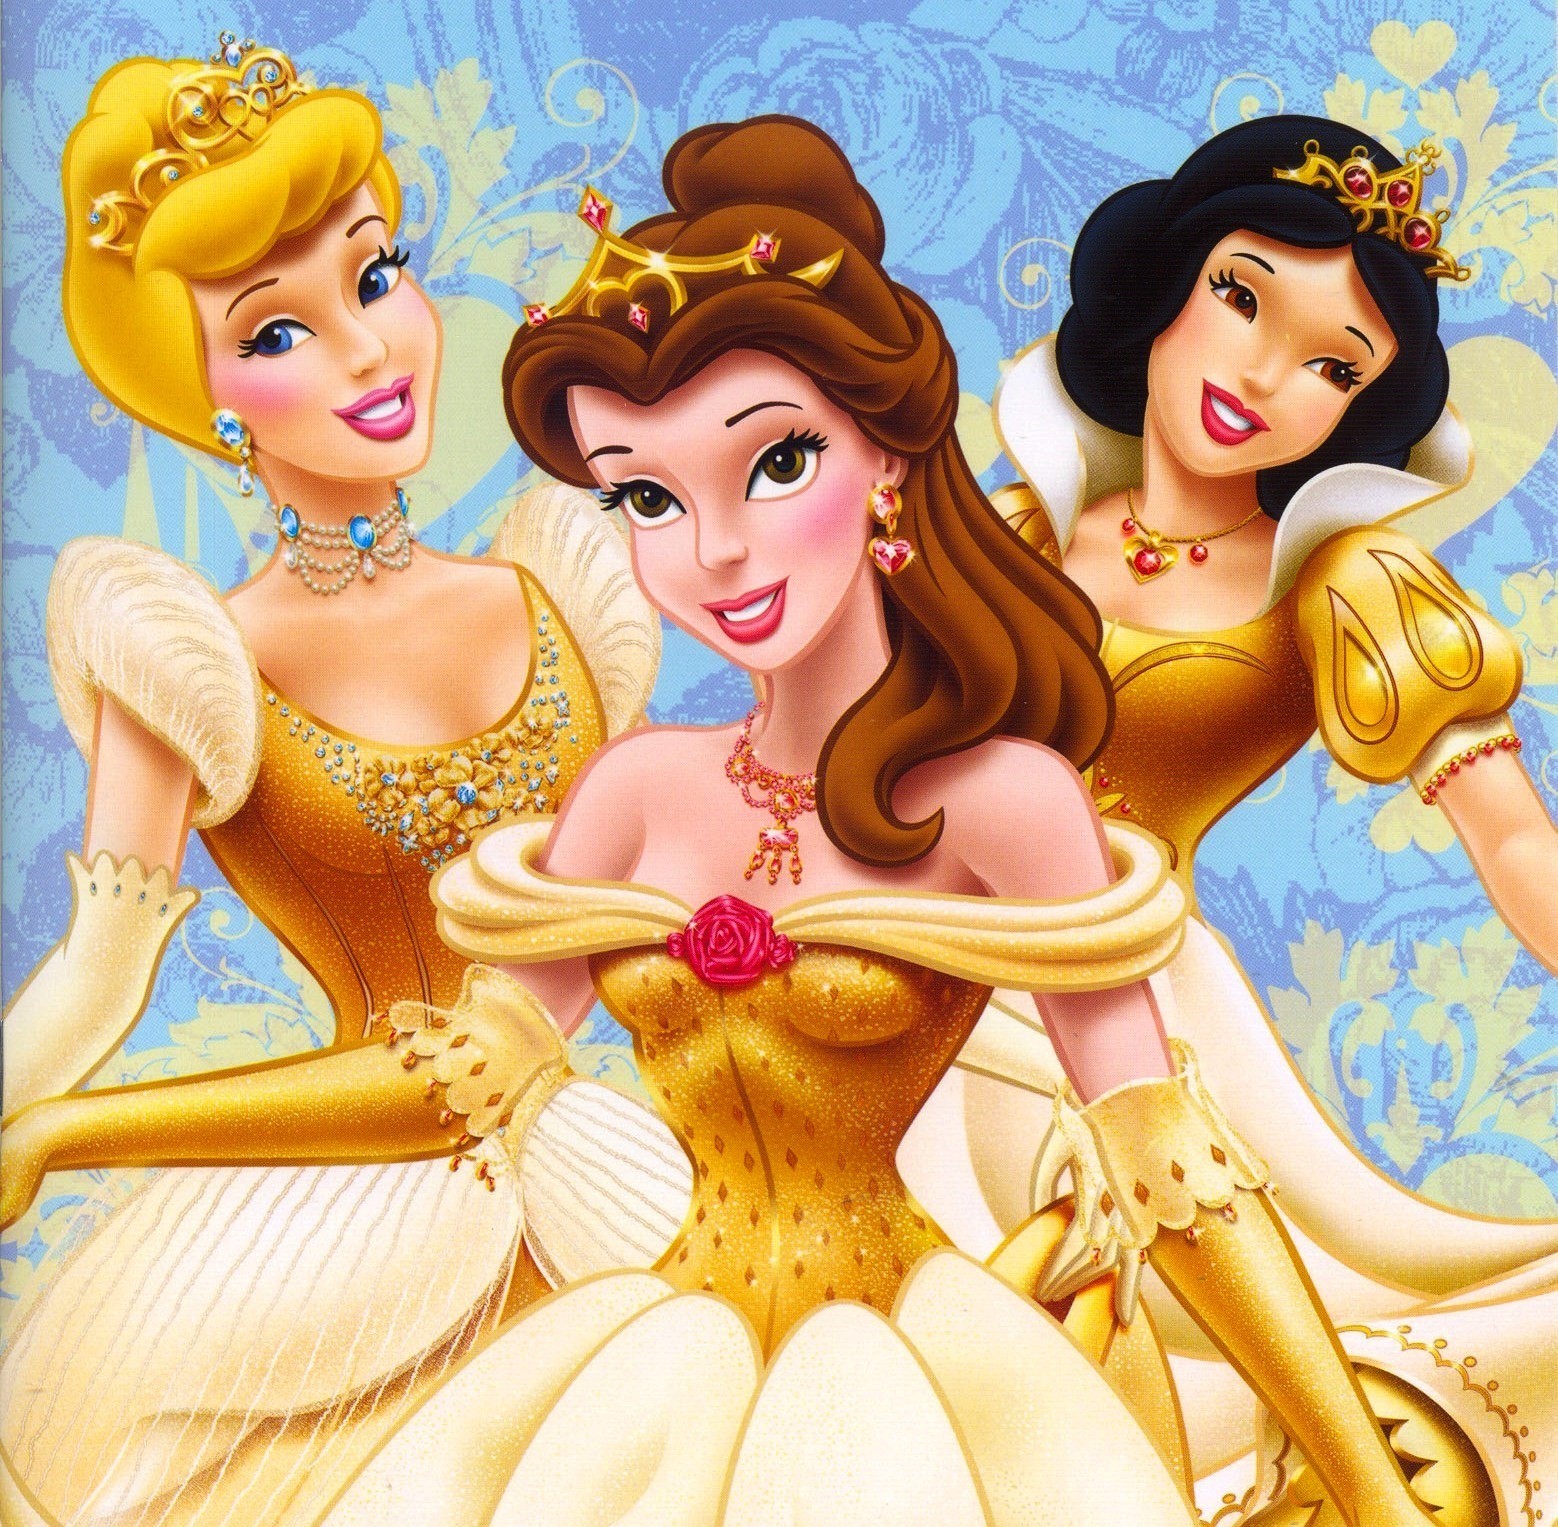 Disney Princesses - Disney Princess Photo (6296071) - Fanpop